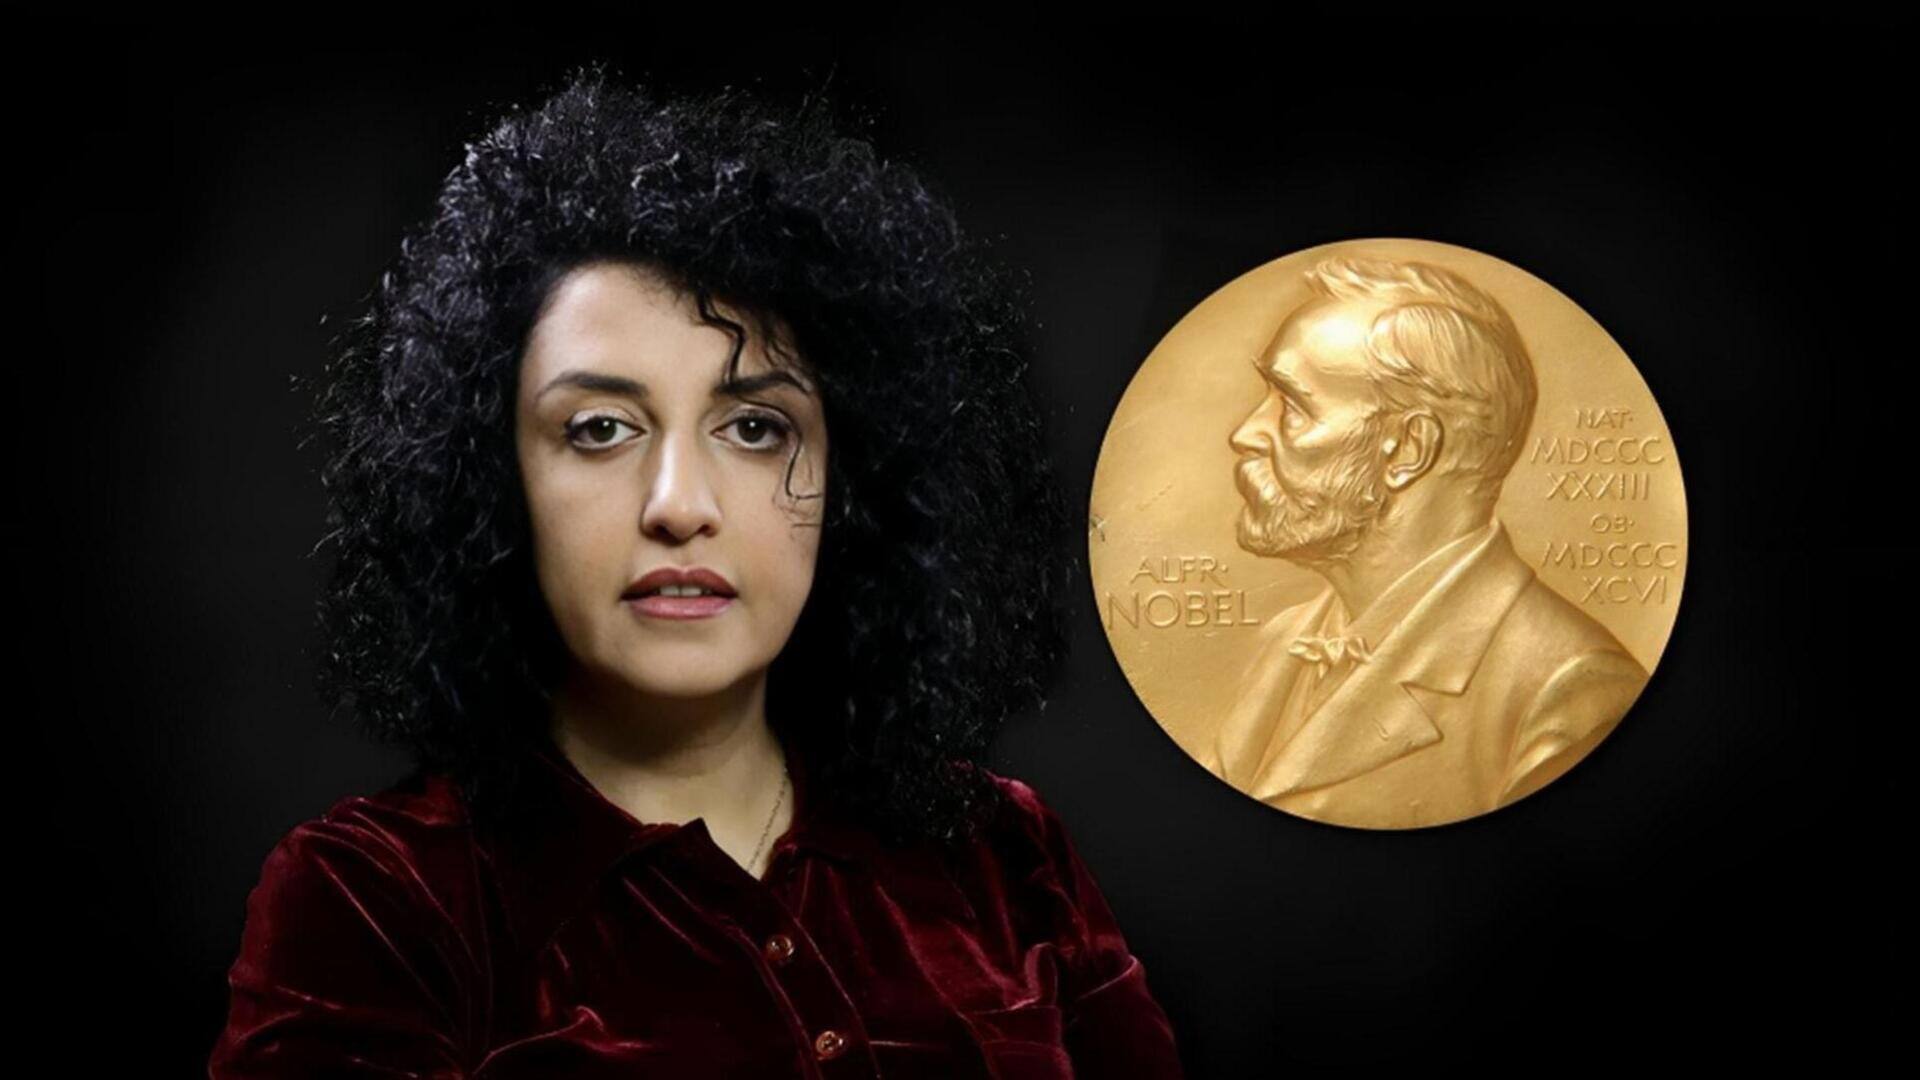 ईरान: नोबेल शांति पुरस्कार विजेता नरगिस मोहम्मदी जेल में भूख हड़ताल पर बैठीं, जानें कारण